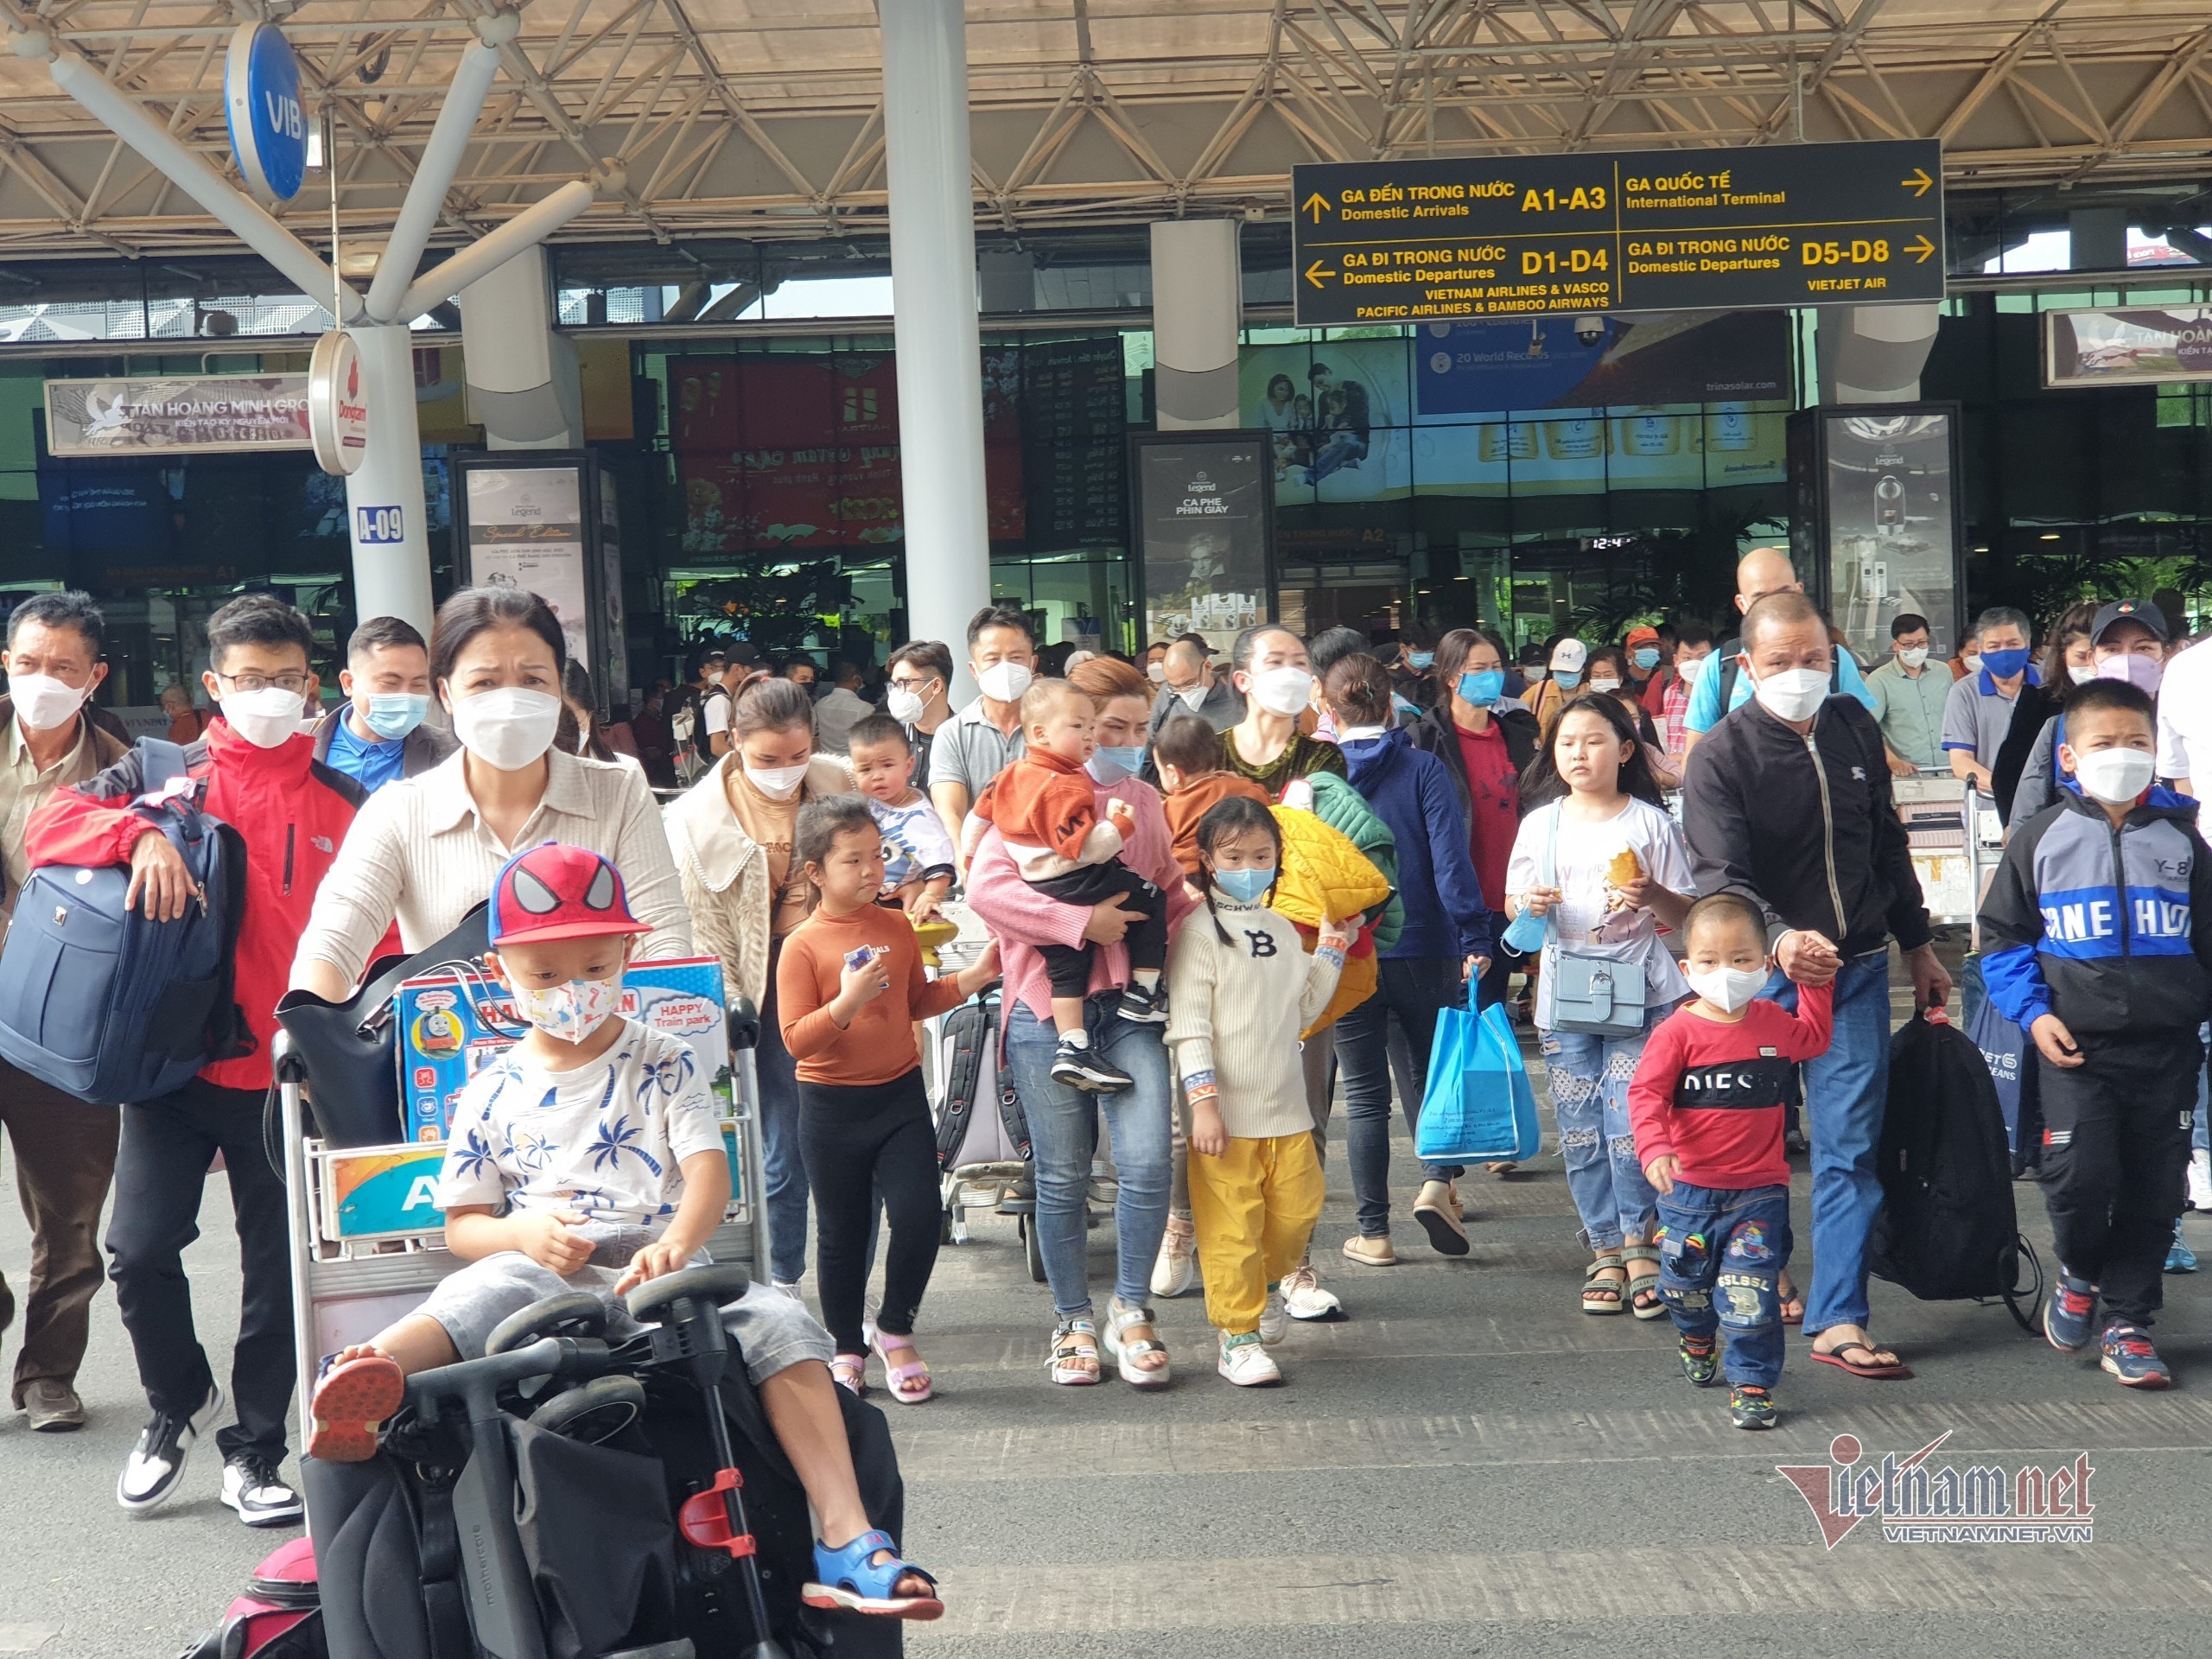 Khách khó đi taxi ở Tân Sơn Nhất, TP.HCM tính đưa xe buýt vào ‘giải cứu’